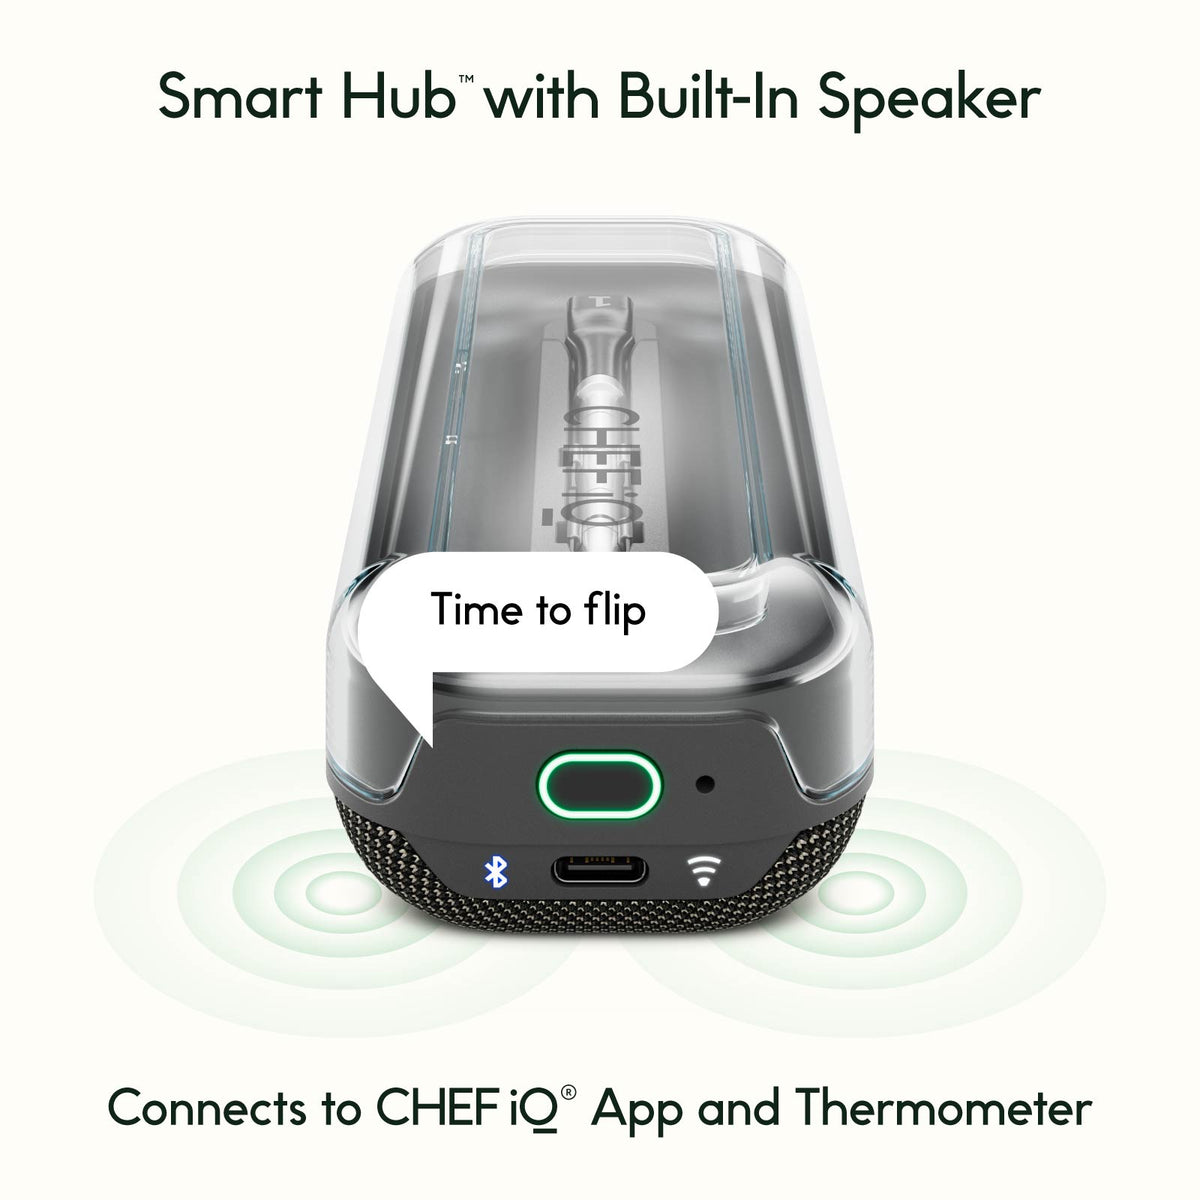 CHEF iQ Smart Thermometer